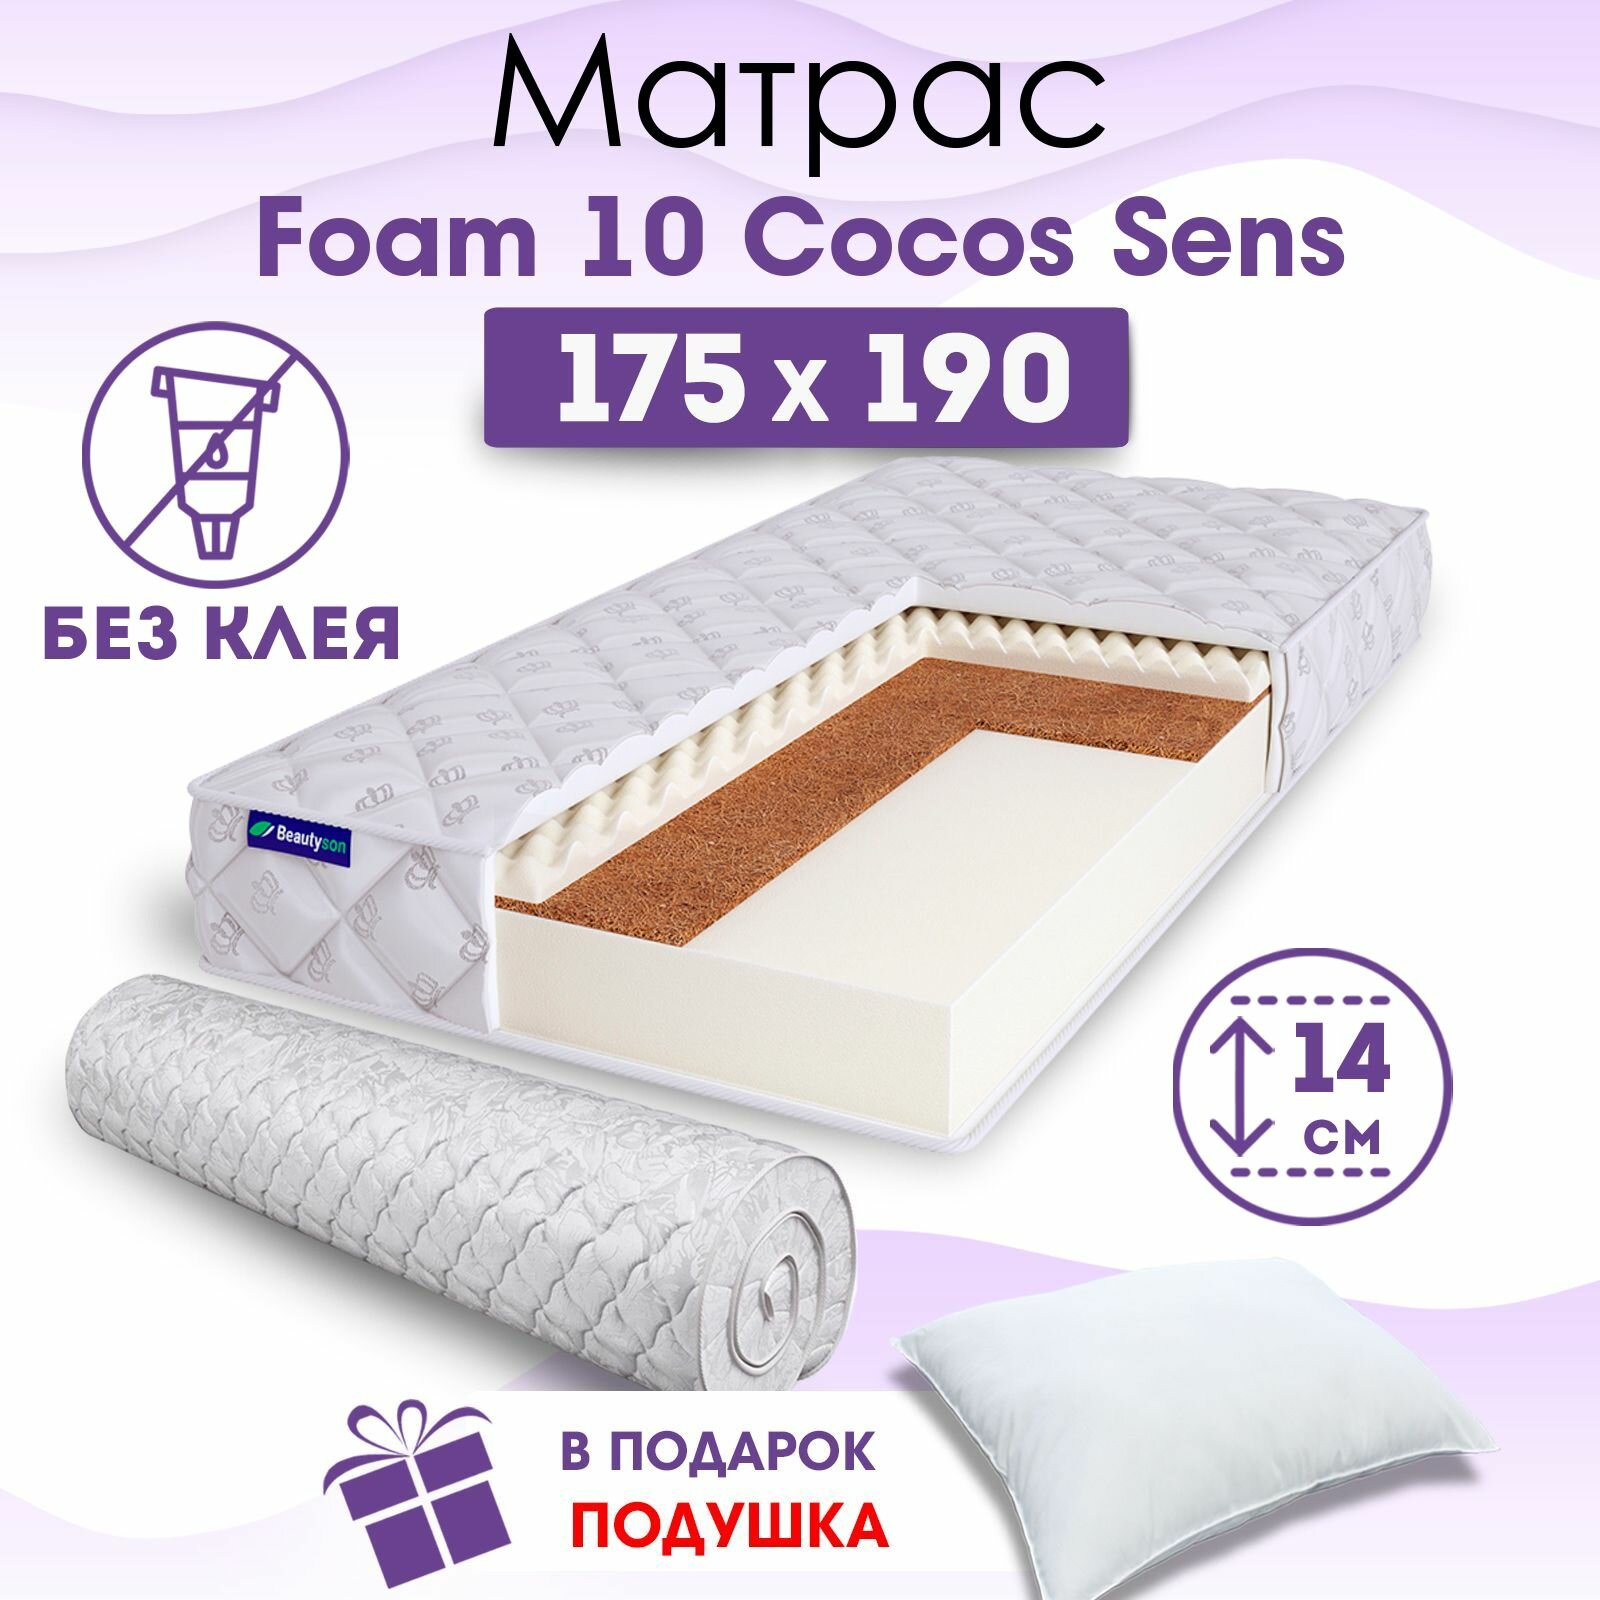 Ортопедический матрас Beautyson Foam 10 Cocos Sens без клея, 175х190, 14 см, беспружинный, двухспальный, на кровать, для дивана, умеренно мягкий